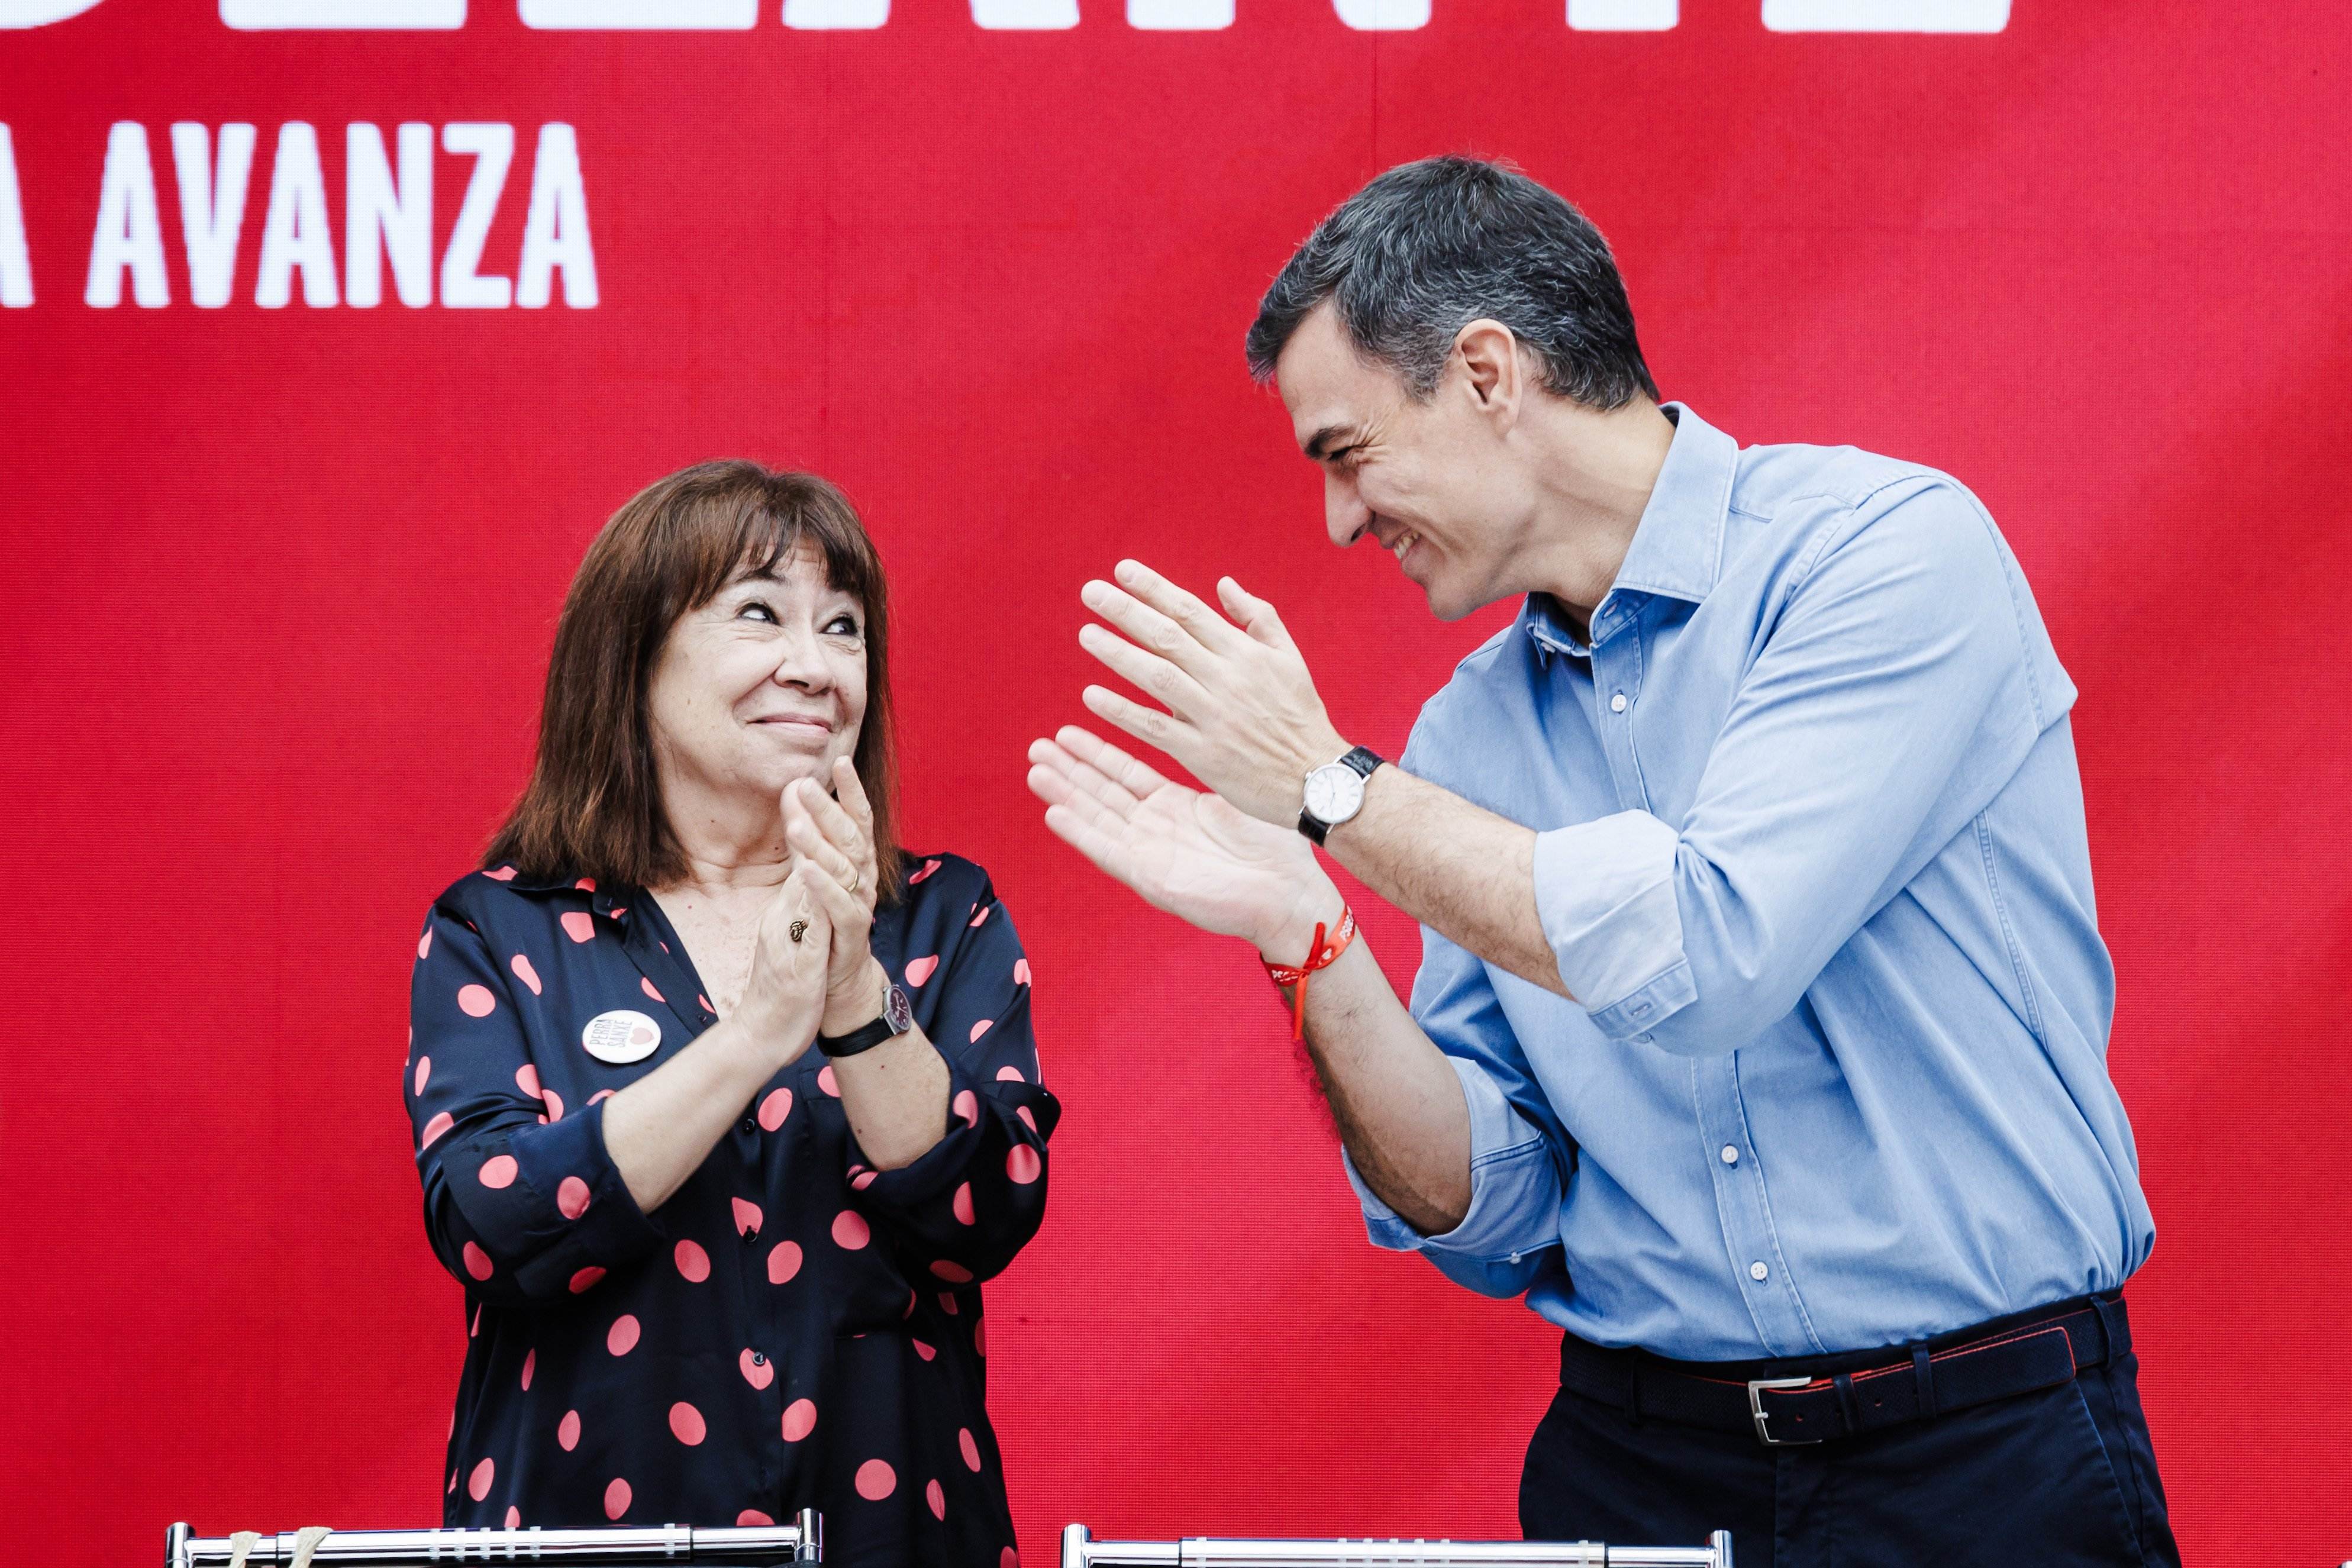 El PSOE se hace suyo el discurso del Felipe VI y reivindica la Constitución por la "convivencia"